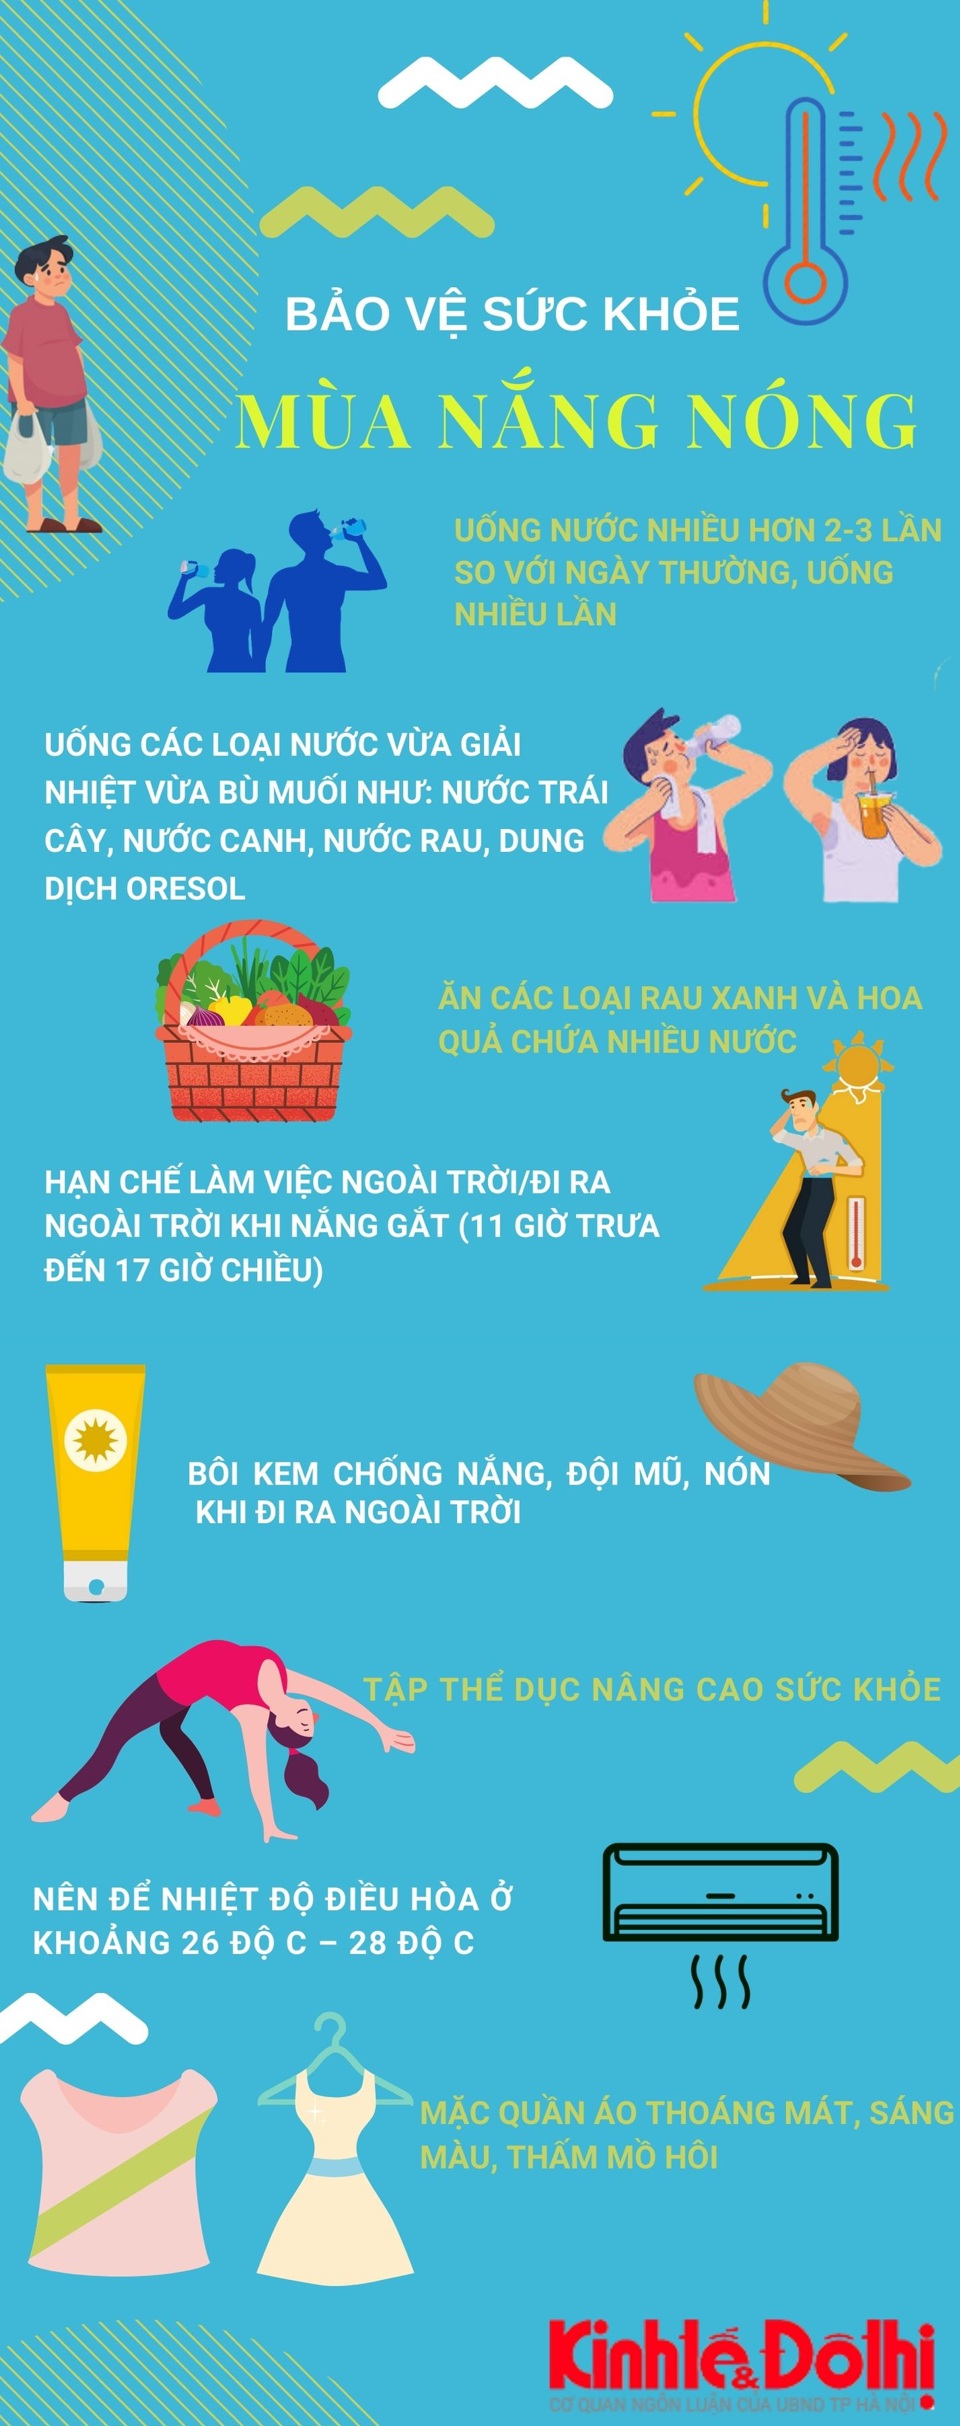 [Infographic] Cách chăm sóc cơ thể khi nắng nóng gay gắt - Ảnh 1